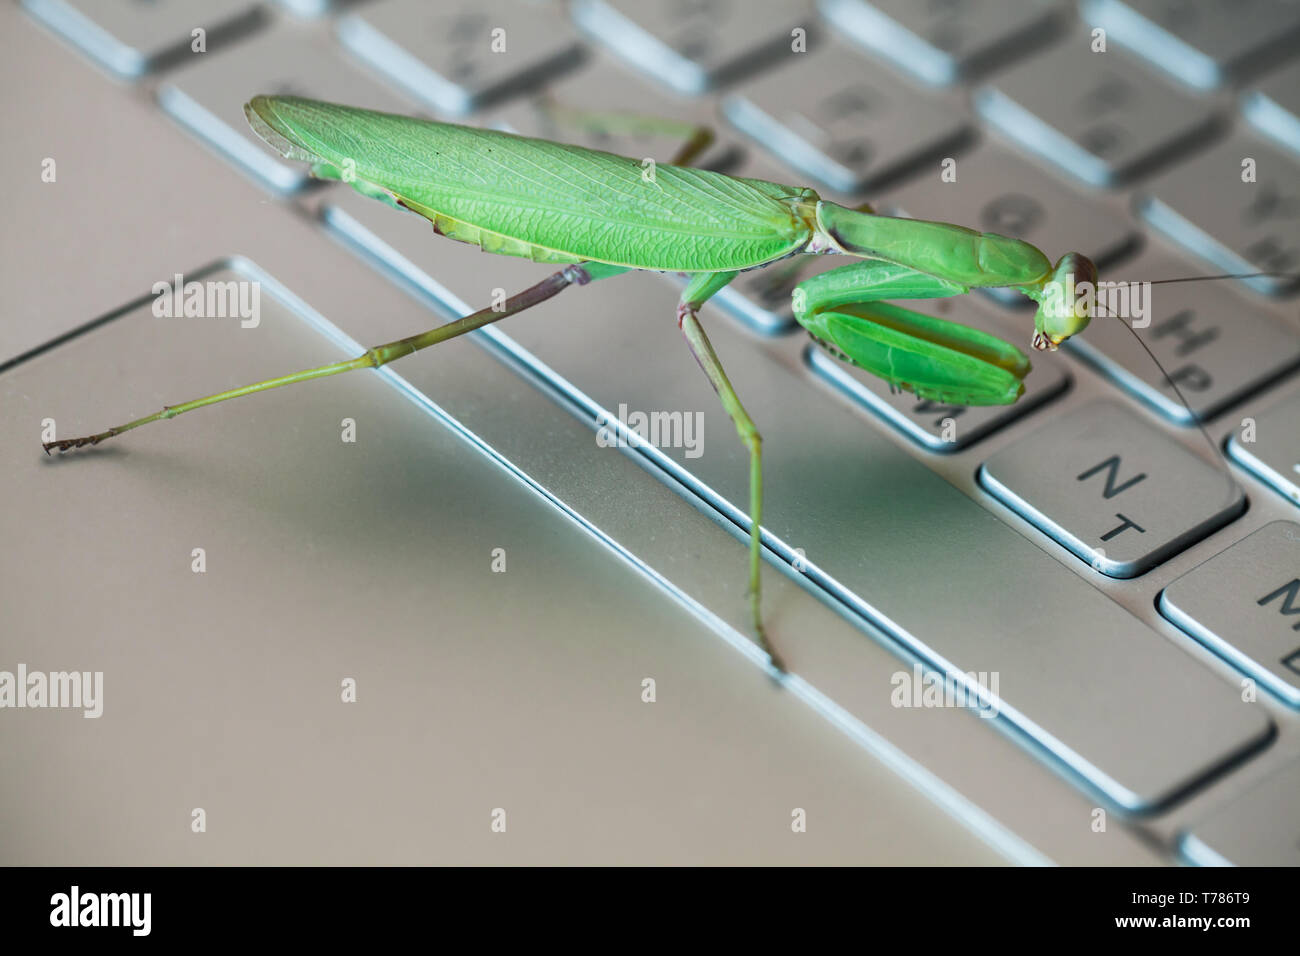 Software bug Metapher, grün Mantis ist auf einem Laptop Tastatur mit englischen und russischen Buchstaben Stockfoto